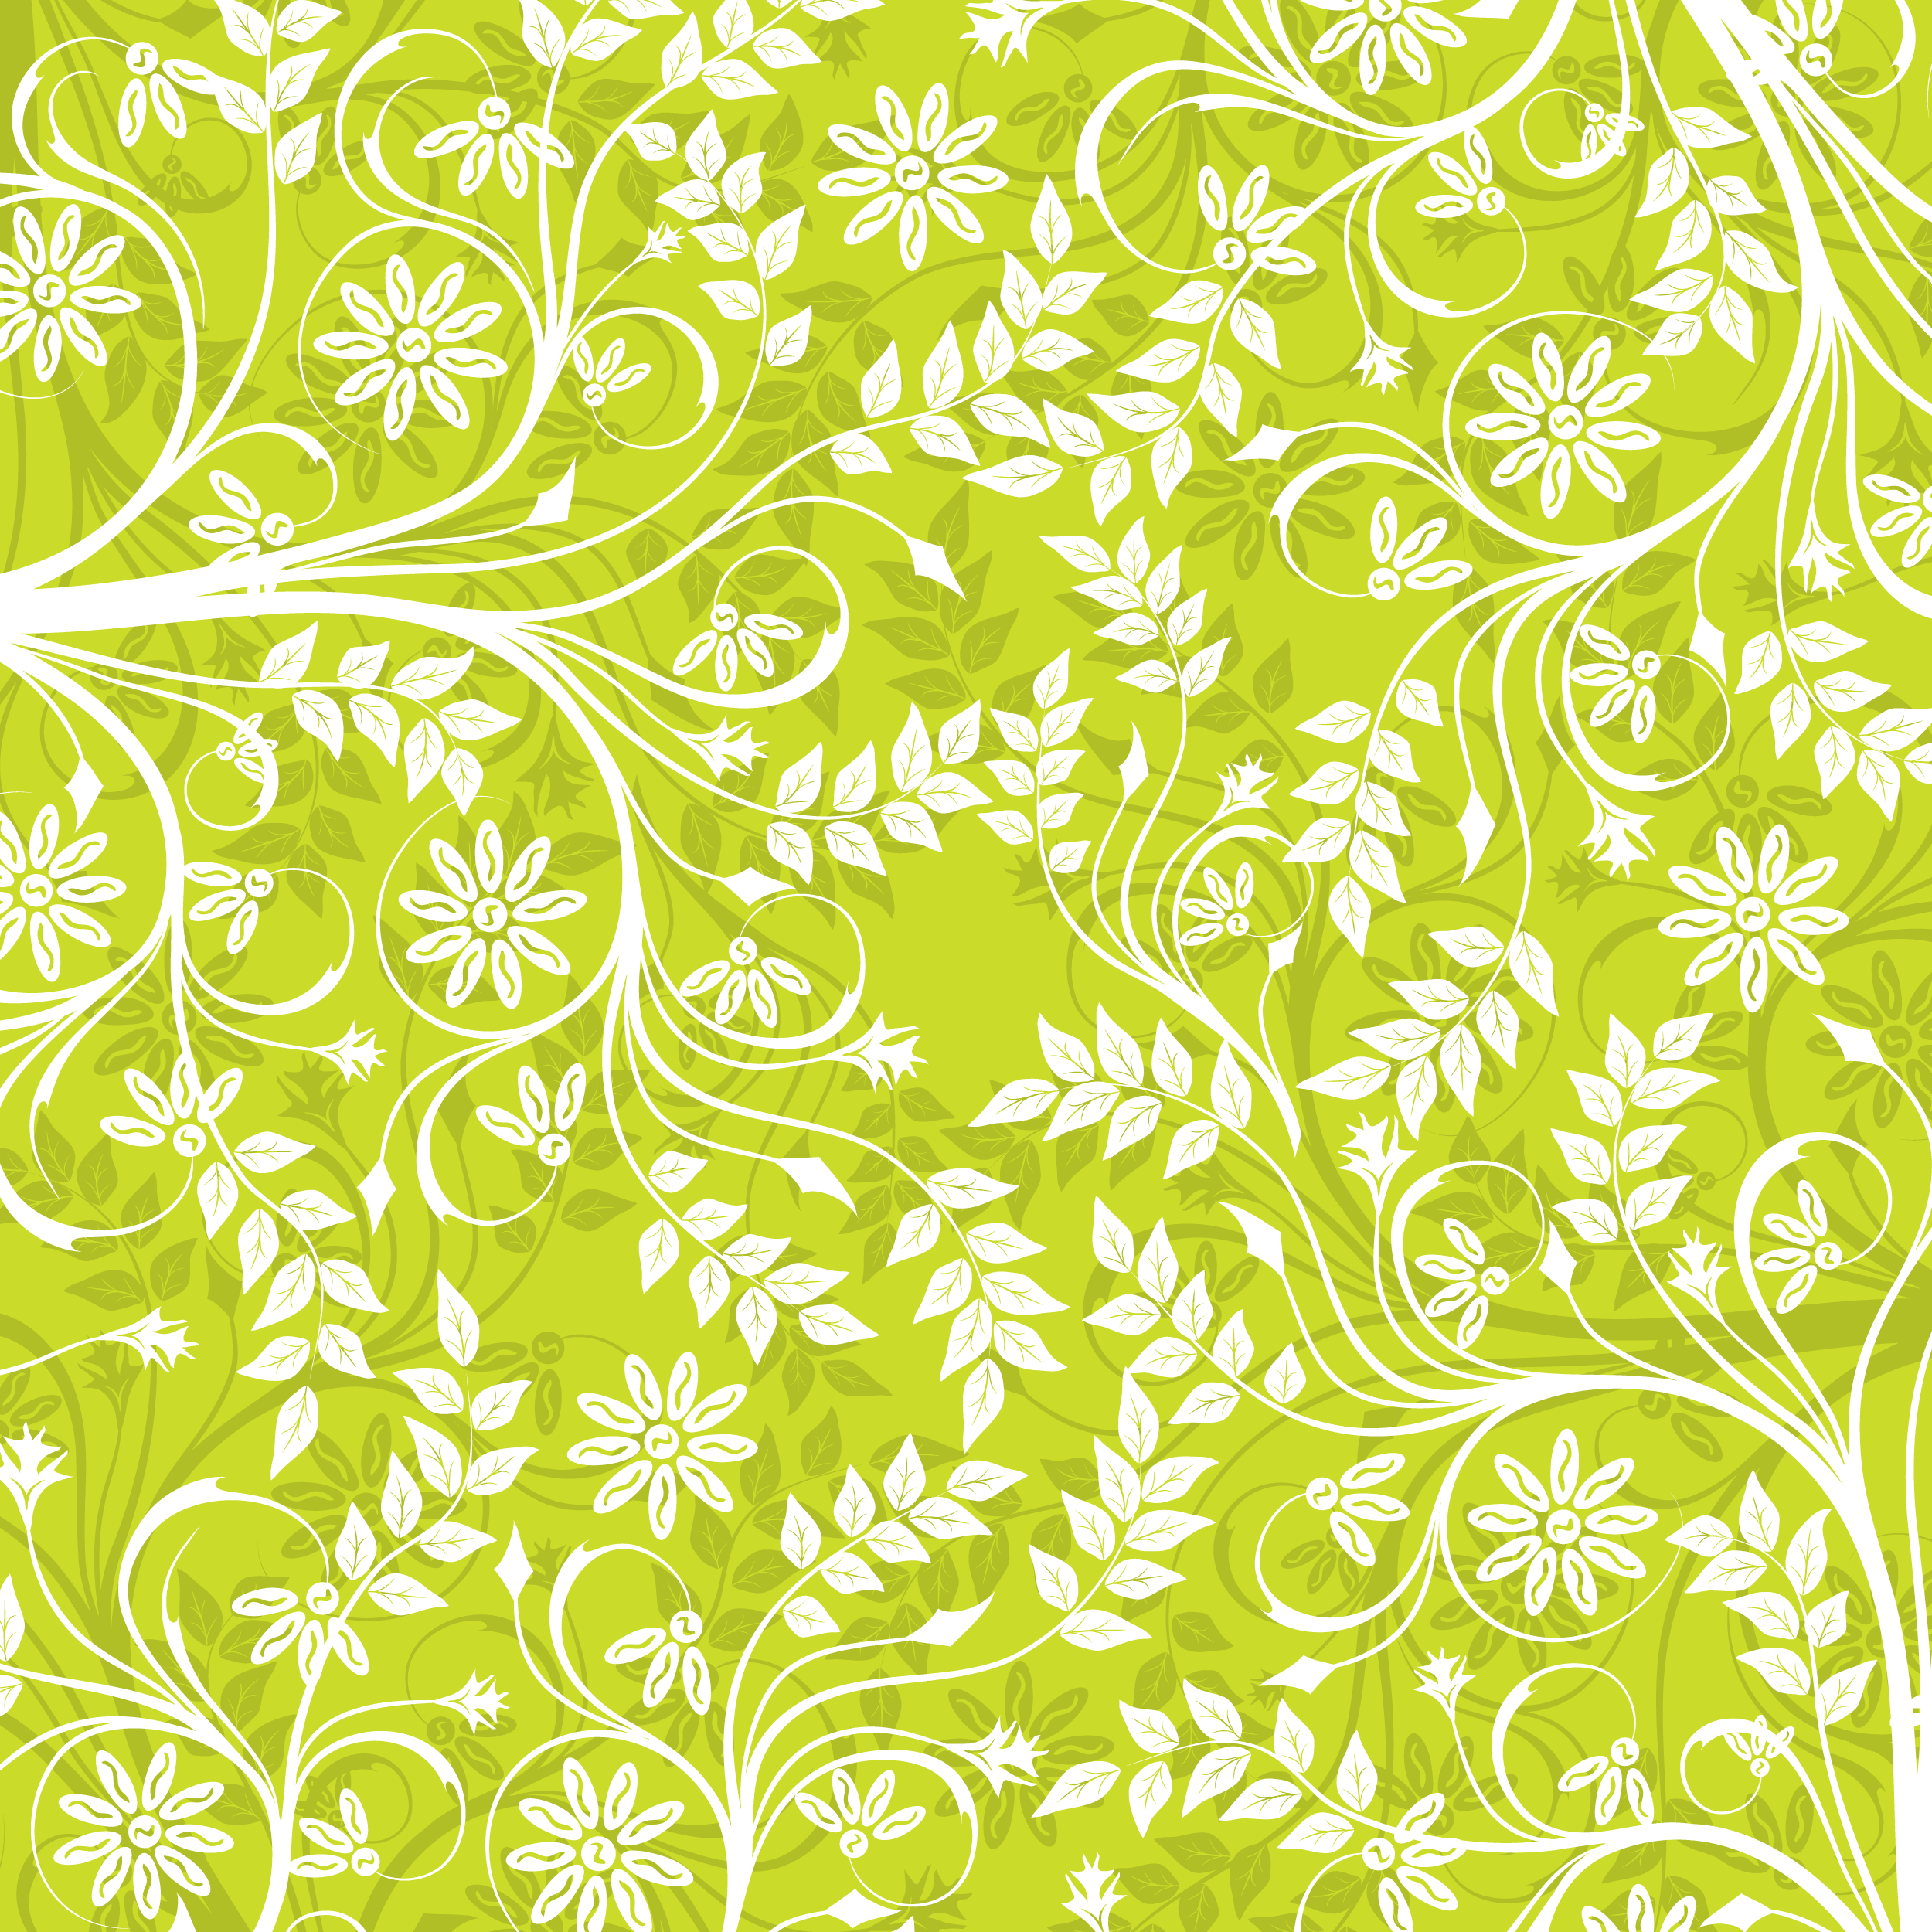 壁紙 背景イラスト 花の模様 柄 パターン No 040 白と緑 茎葉